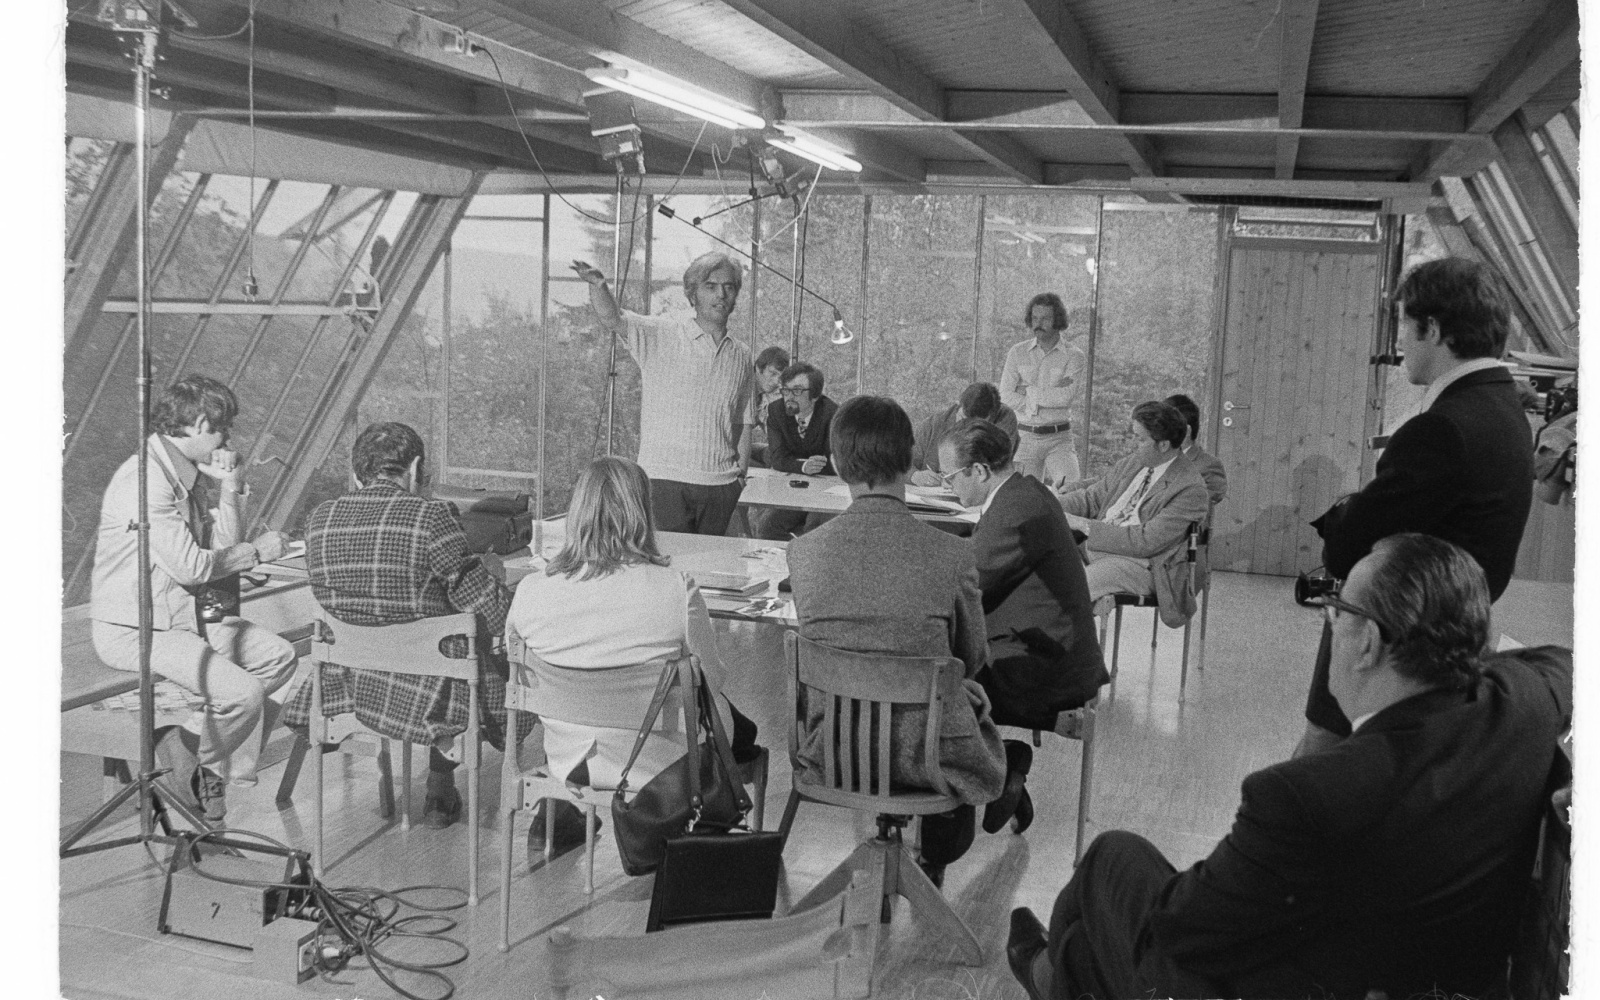 Eine alte schwarz-weiß Aufnahme des Architekten Frei Otto, der in einem Kreis von Zuhörern steht